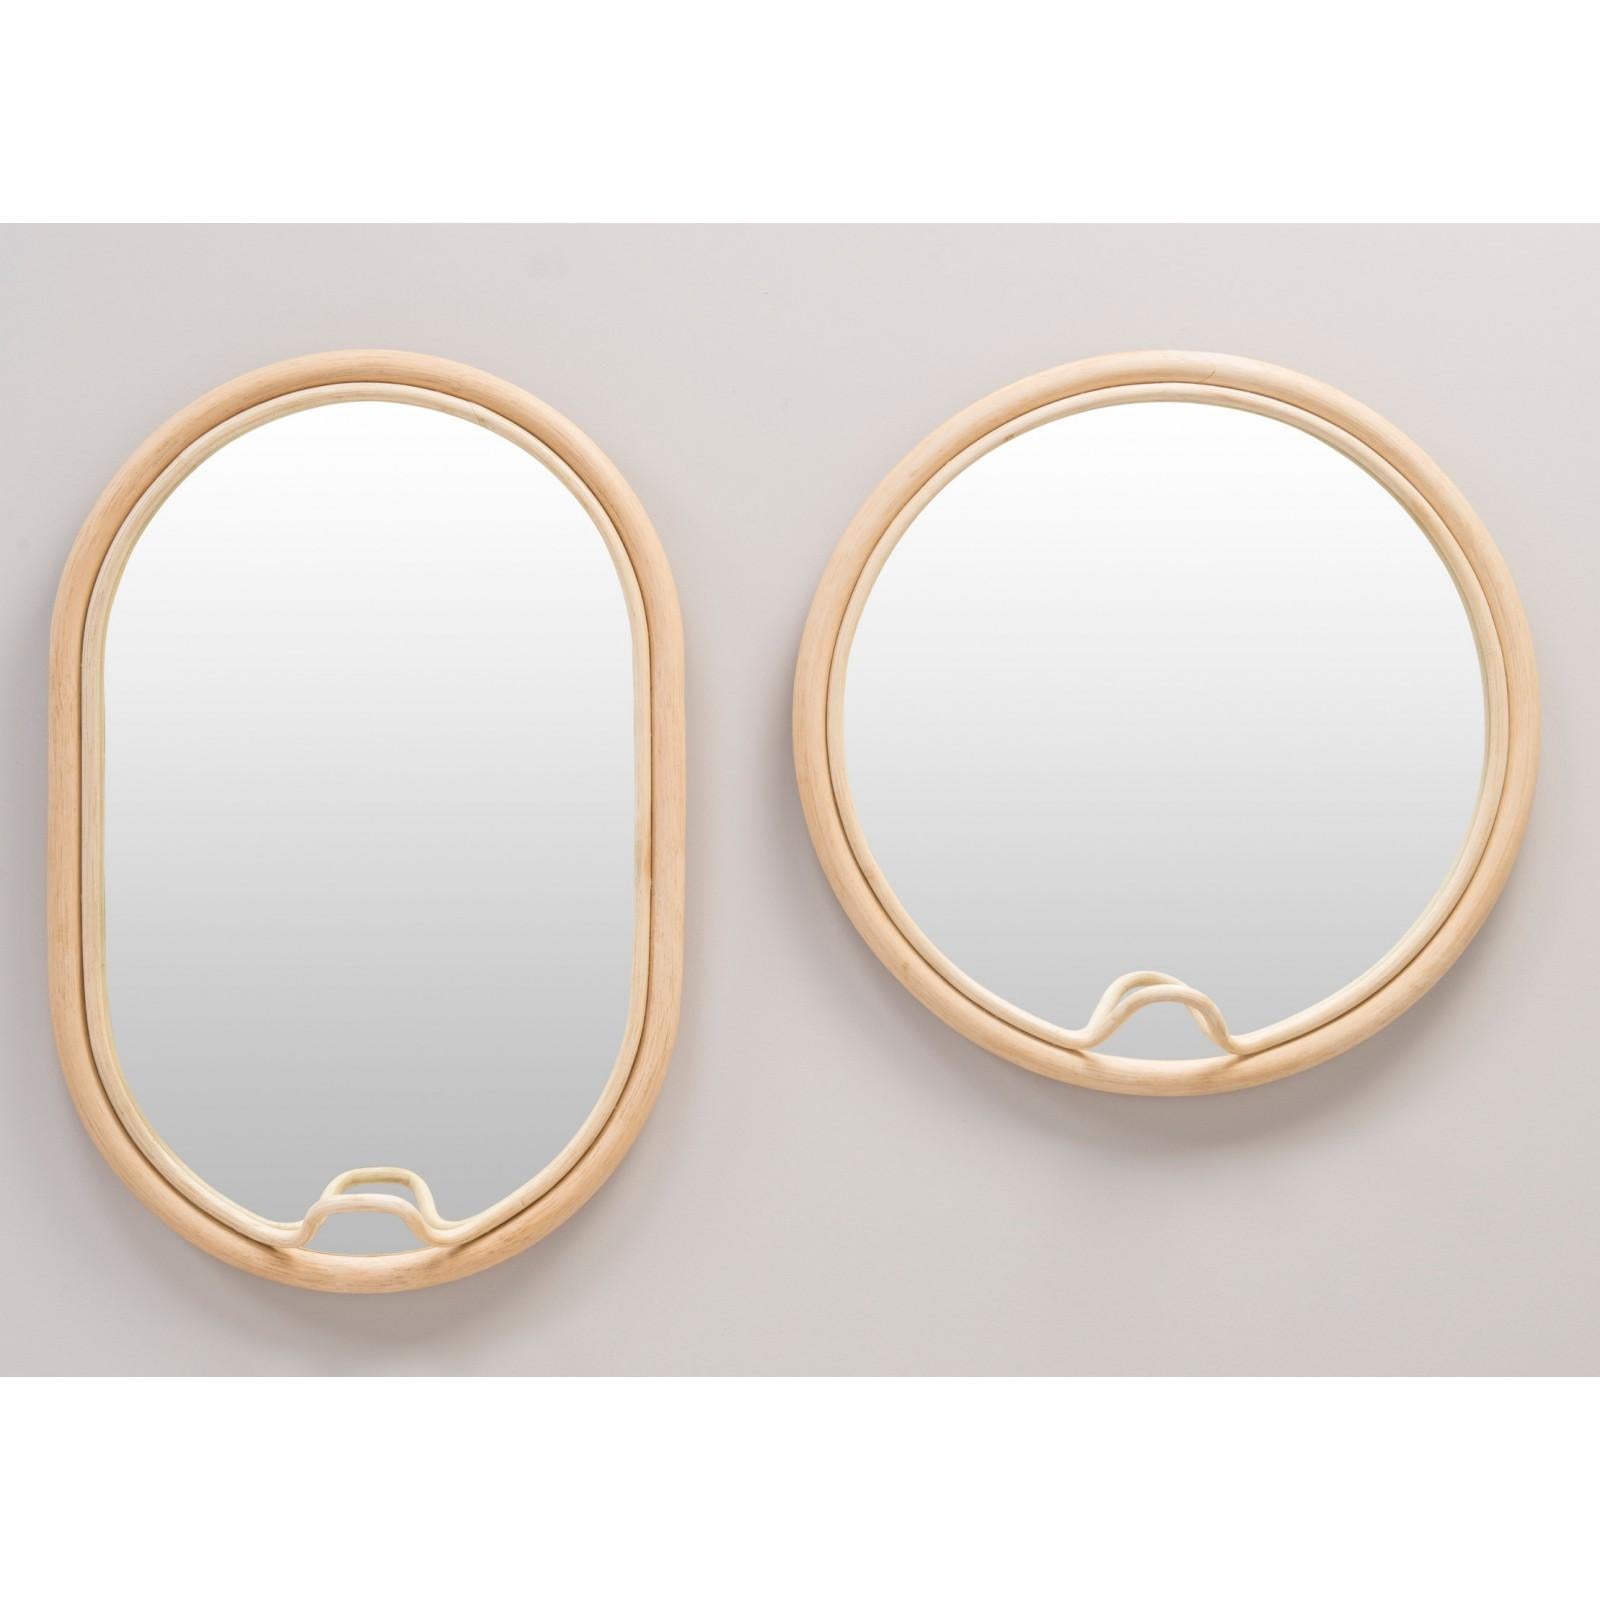 Contemporary French Design Rattan Mirror